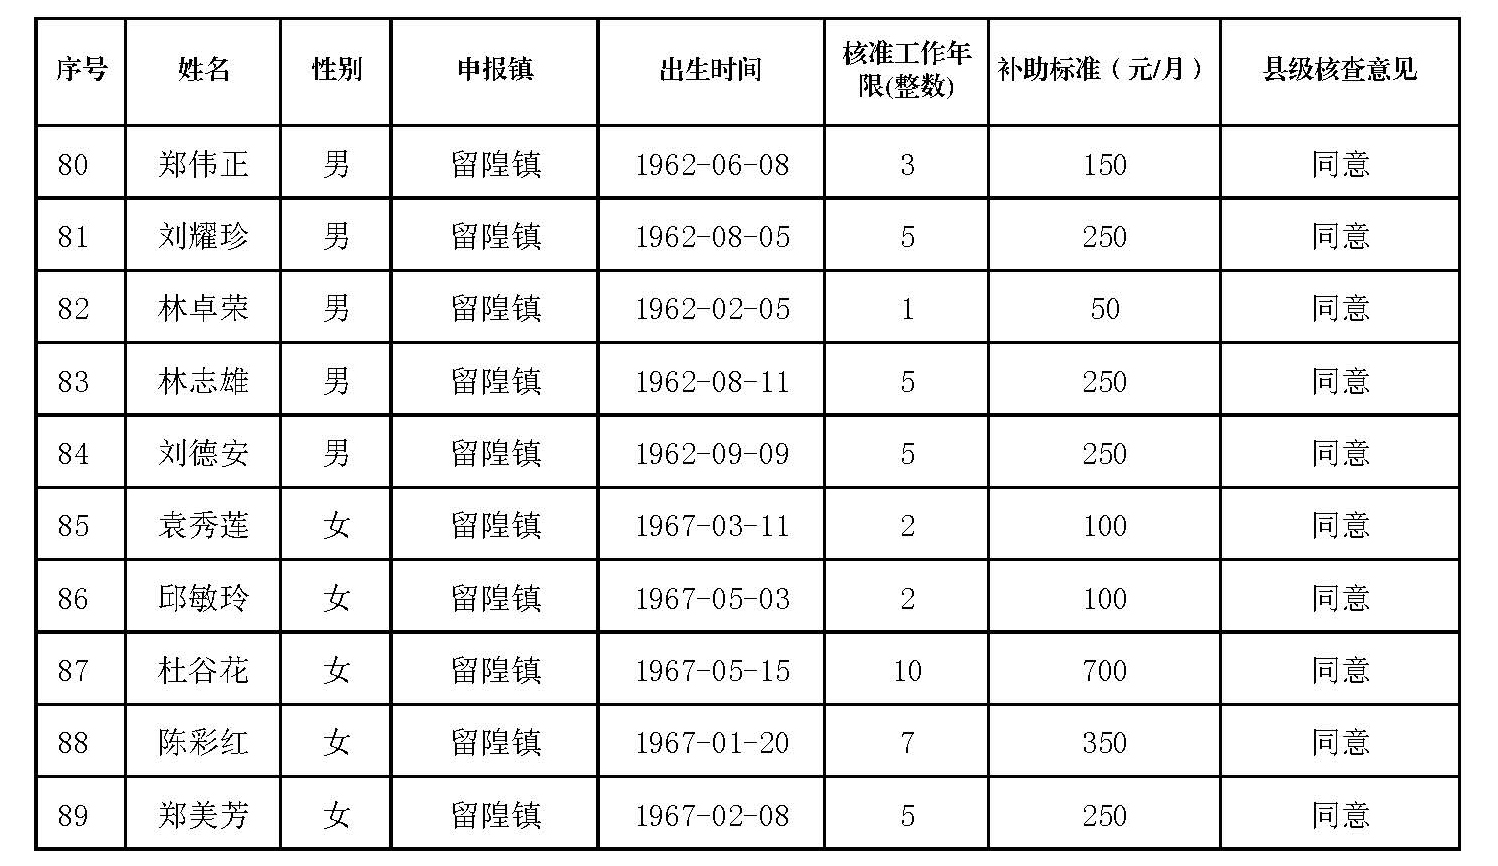 丰顺县原民办代课教师2022年度新增生活困难补助发放对象名册表_页面_4.jpg